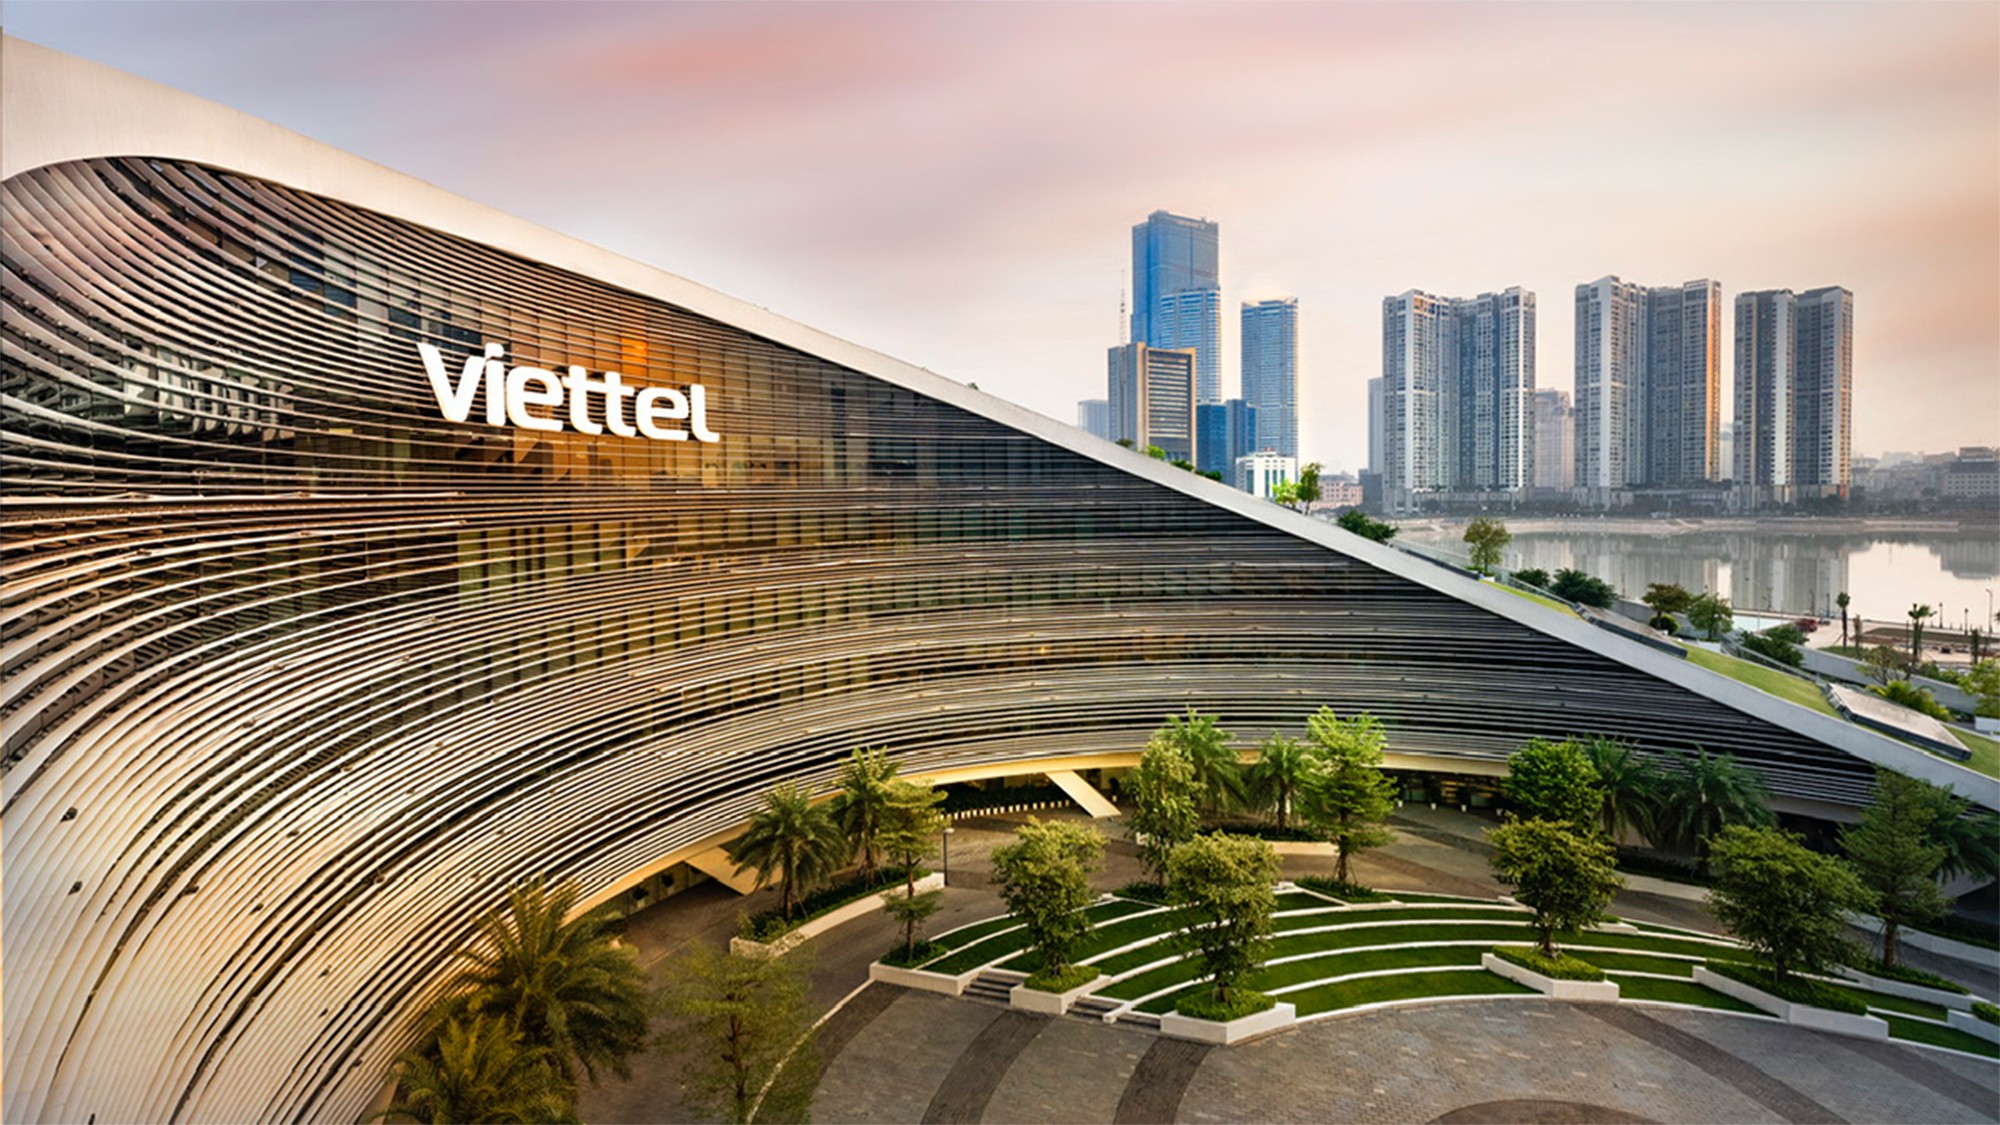 Viettel đứng thứ 2 thế giới về sức mạnh thương hiệu trong lĩnh vực viễn thông